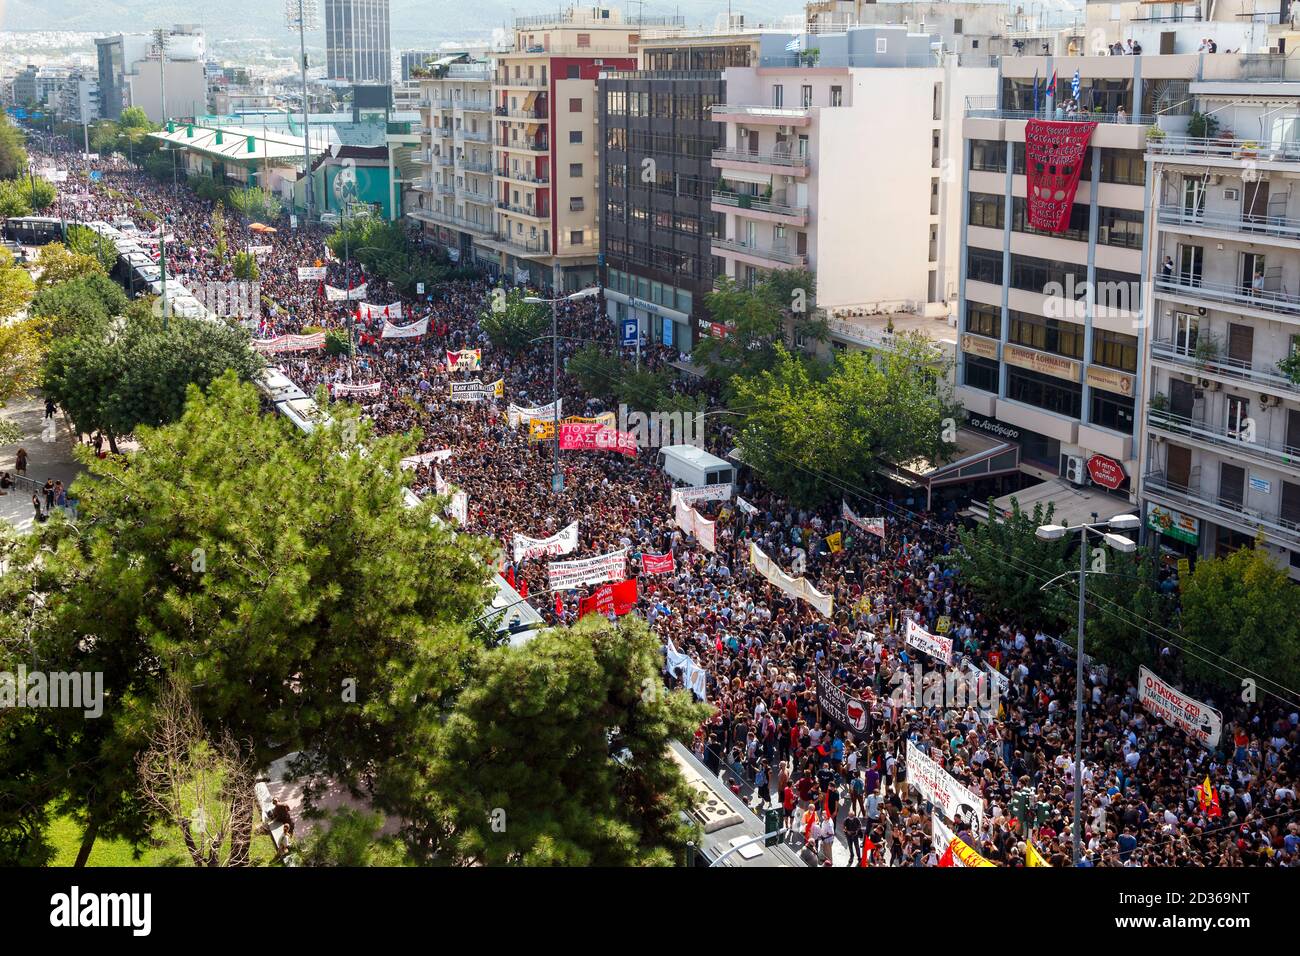 Des milliers de personnes protestant à Athènes, en Grèce, en attendant le verdict du 'procès de l'Aube dorée', le procès le plus important depuis 50 ans Banque D'Images